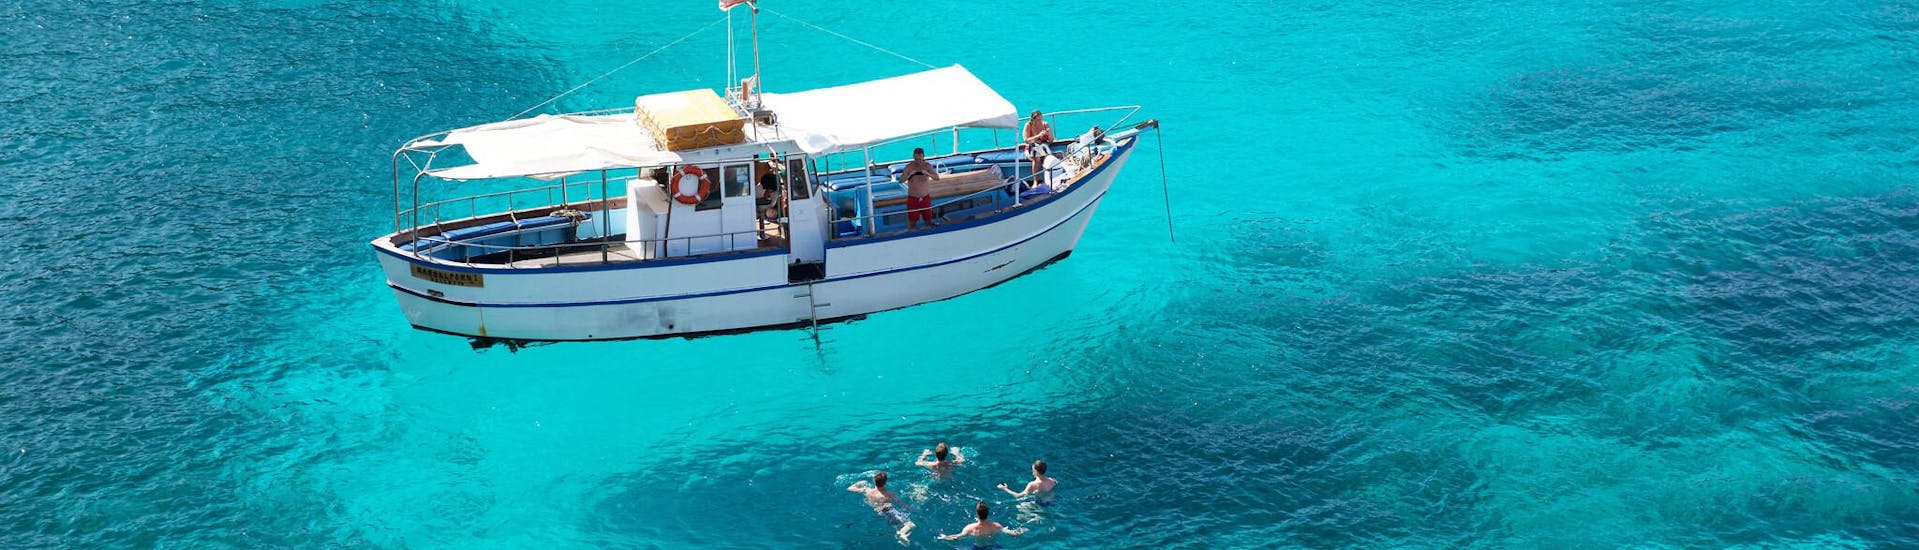 Des personnes s'amusant dans une lagune lors d'un arrêt de leur balade en bateau.